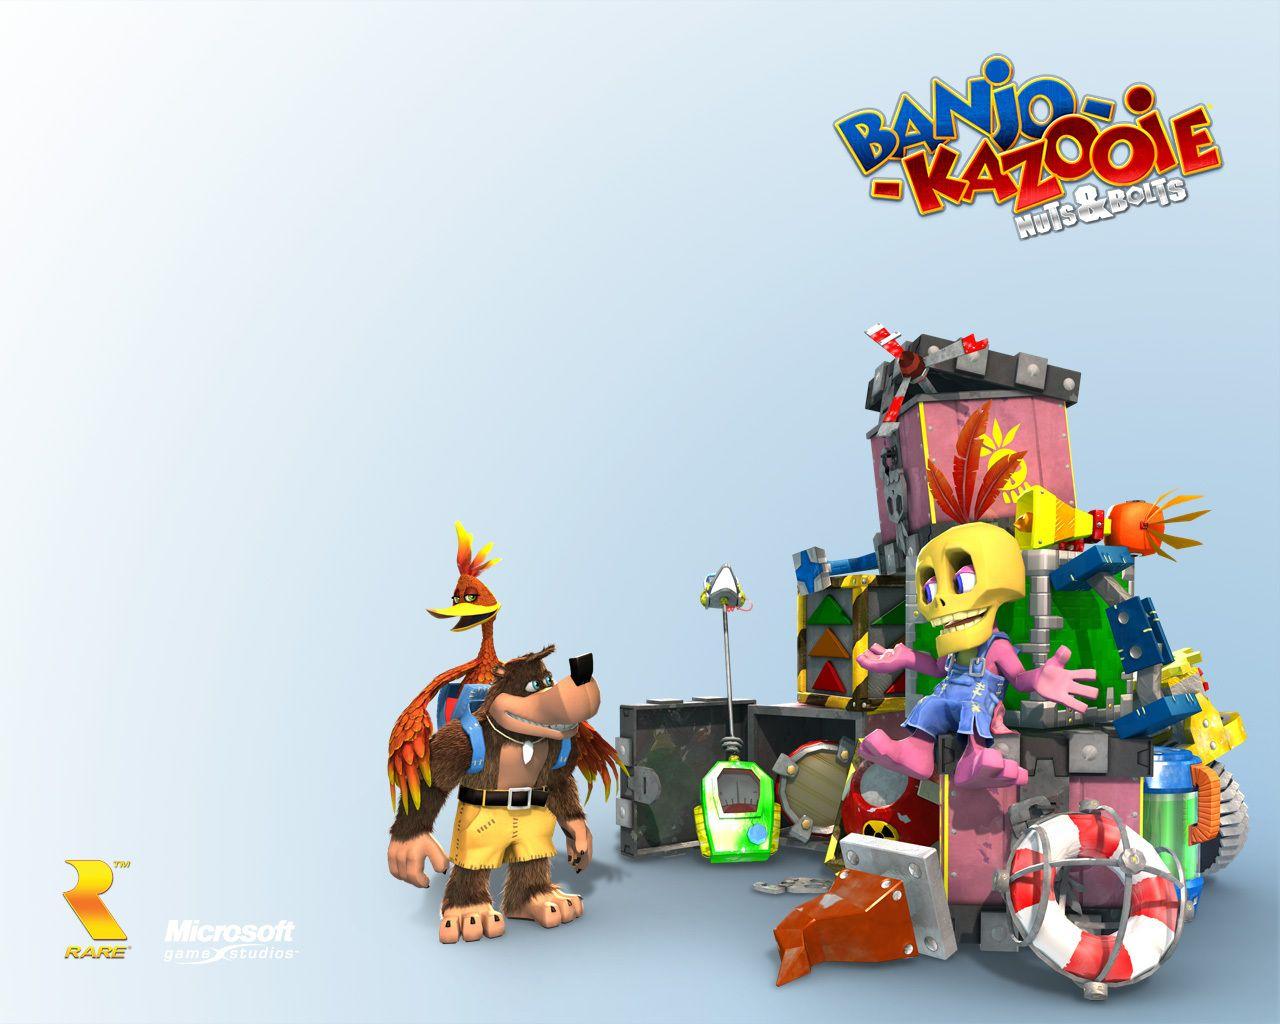 Banjo Kazooie Image Banjo Kazooie: Nuts & Bolts HD Wallpaper